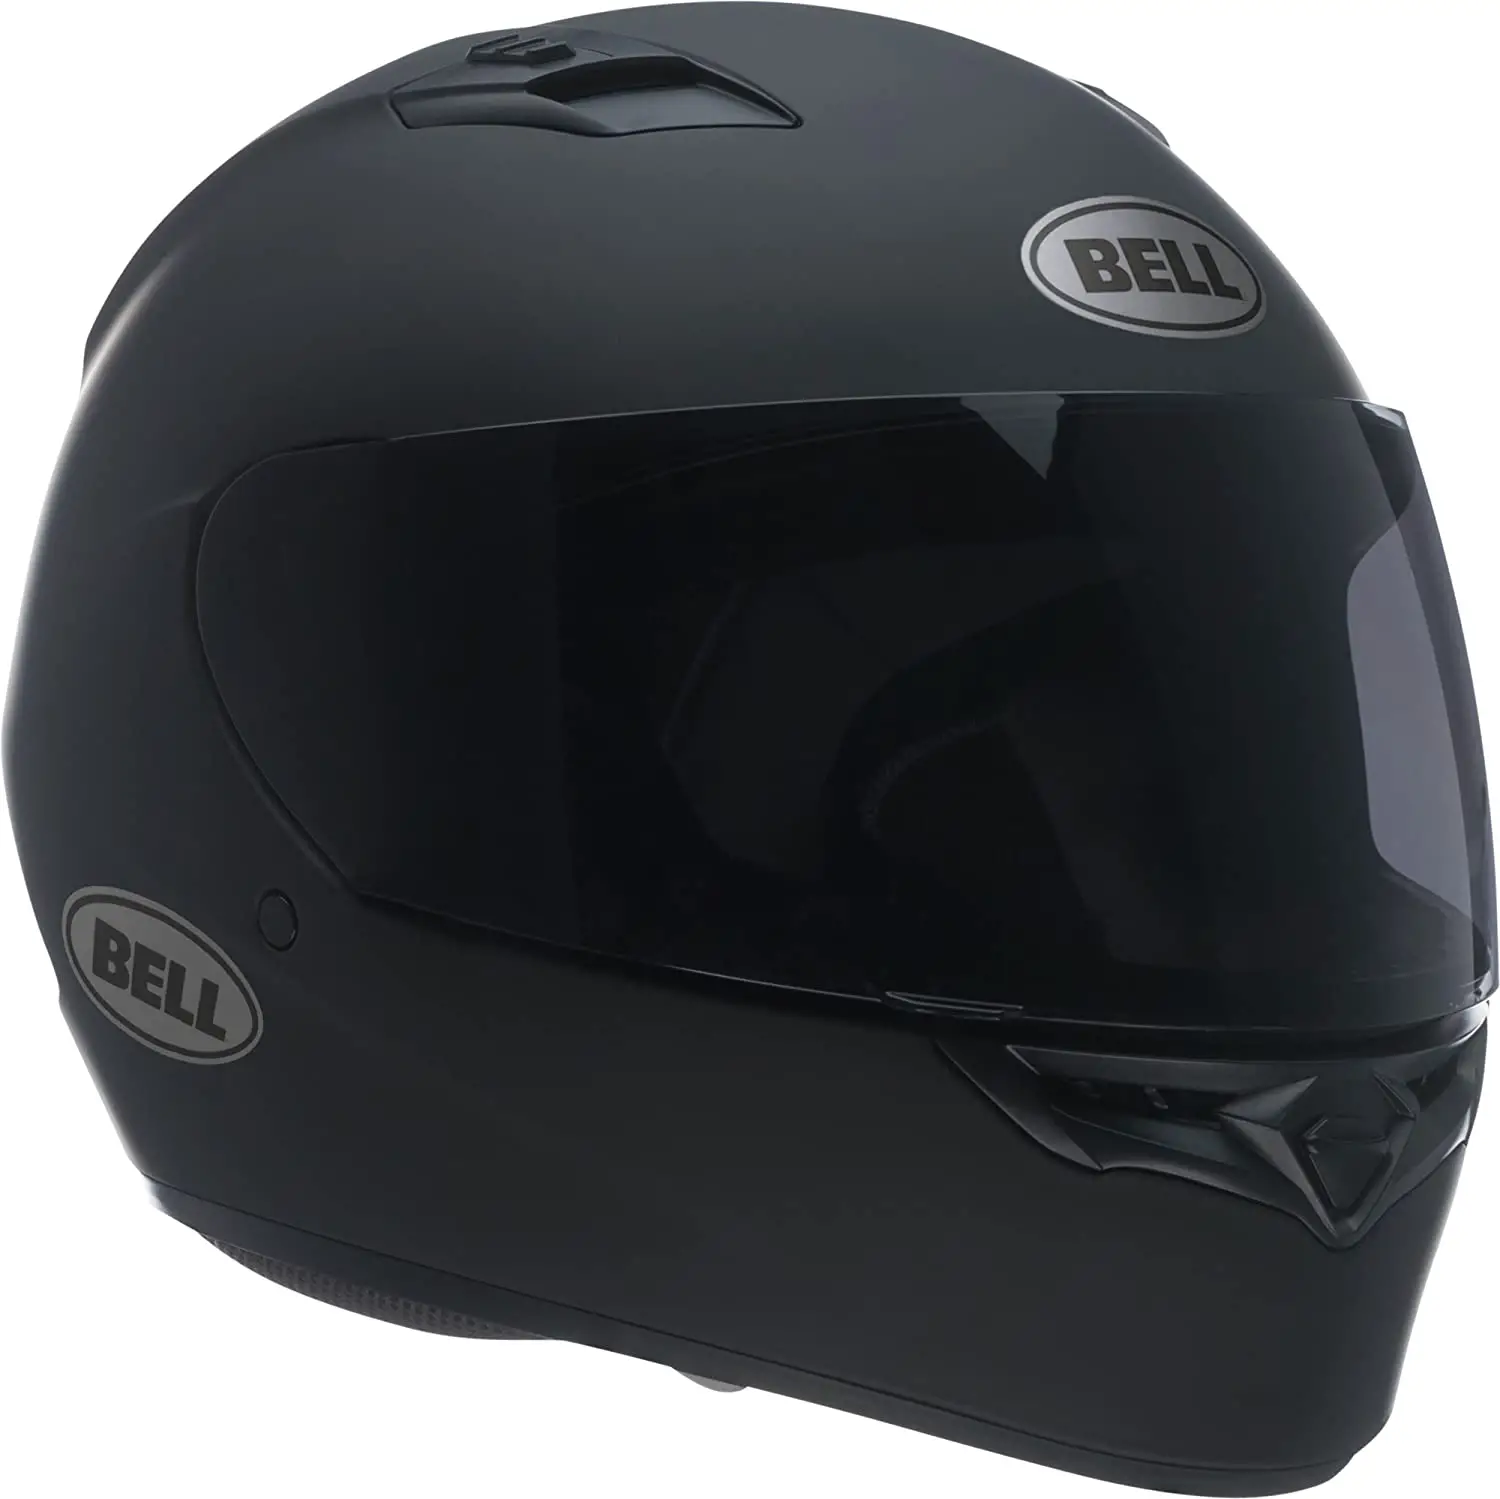 Quietest Motorcycle Helmet:7 Best Quiet Models in the Market - Soundproof Empire